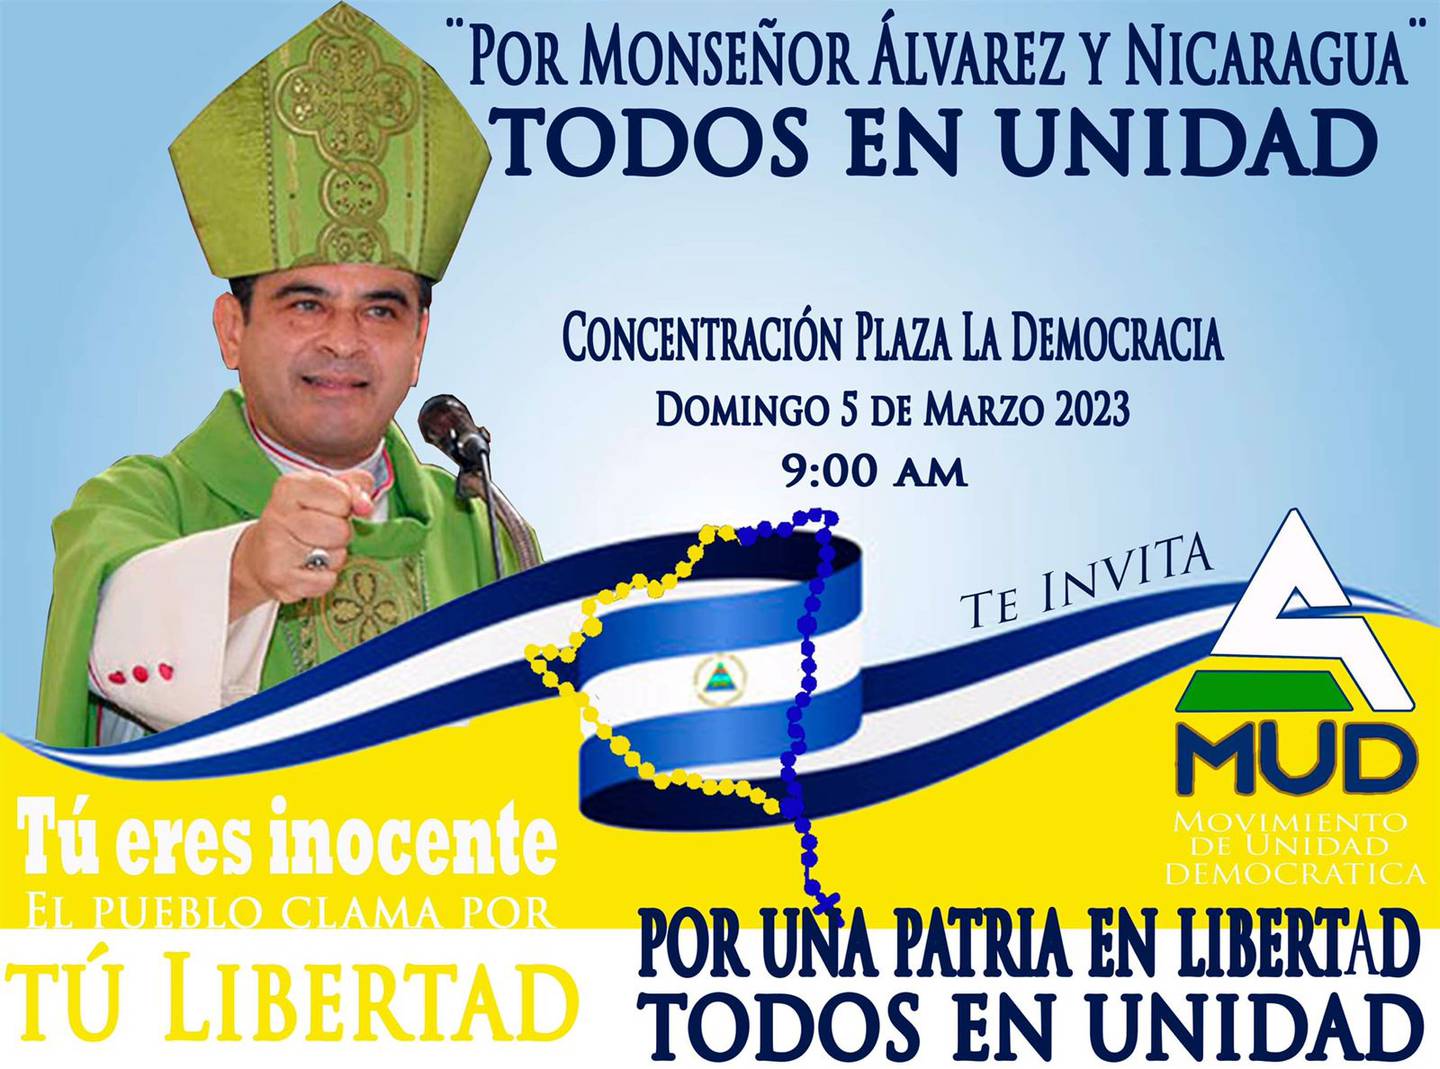 Invitación para la concentración en la que demandaran liberación del obispo de Nicaragua